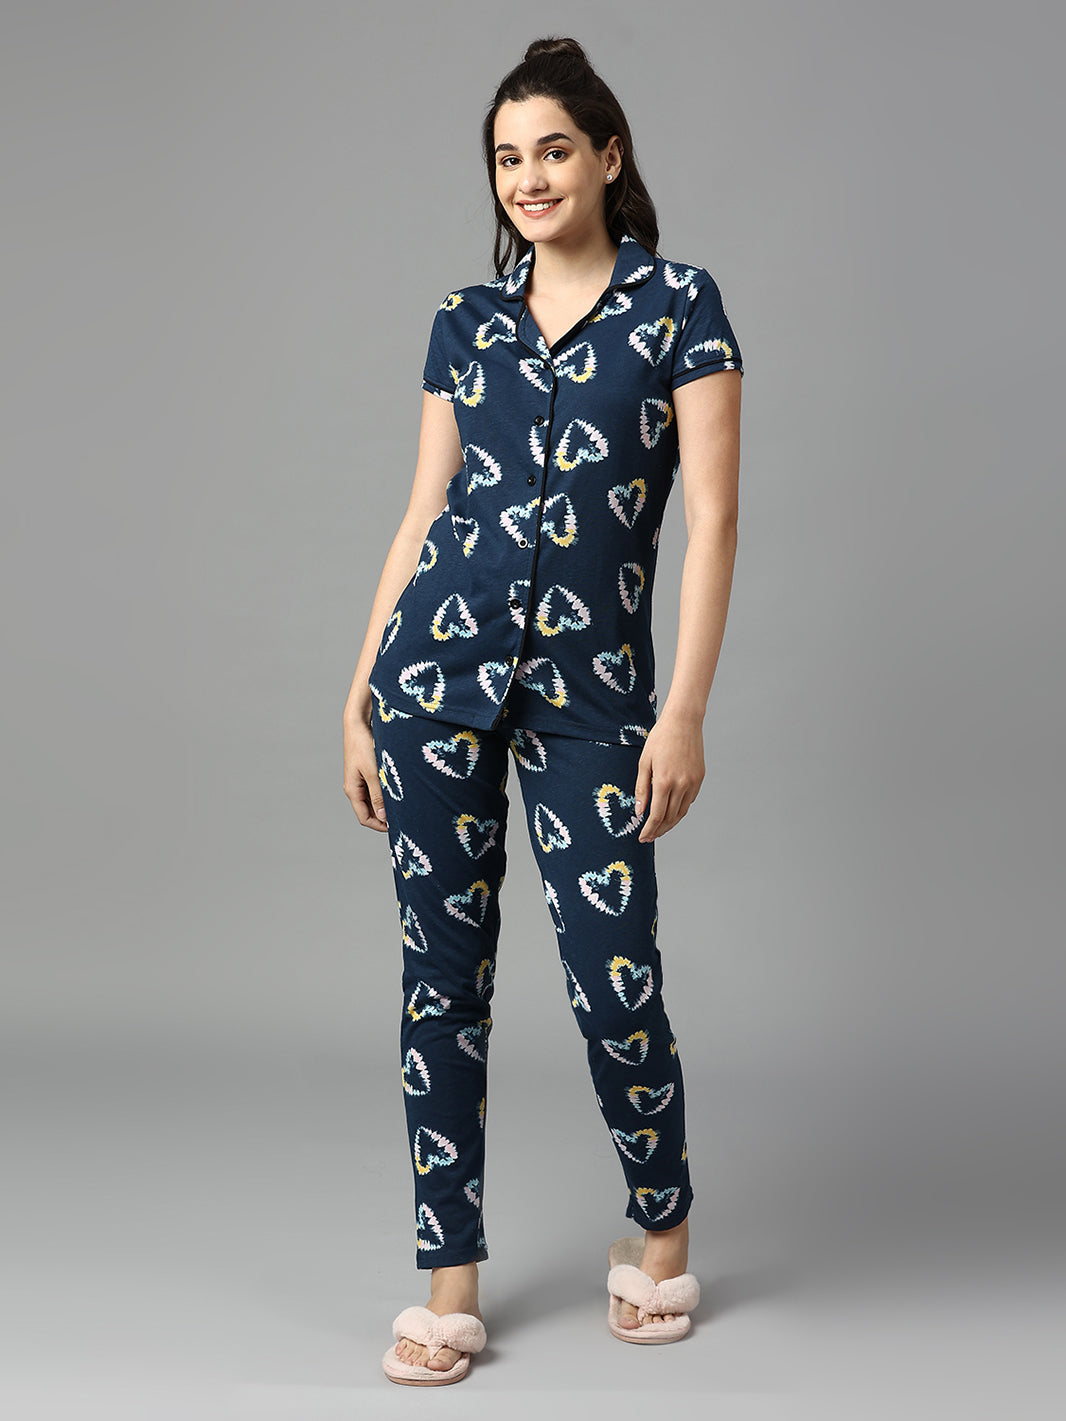 Women Dark Blue Hearts Graphic Printed Nightwear